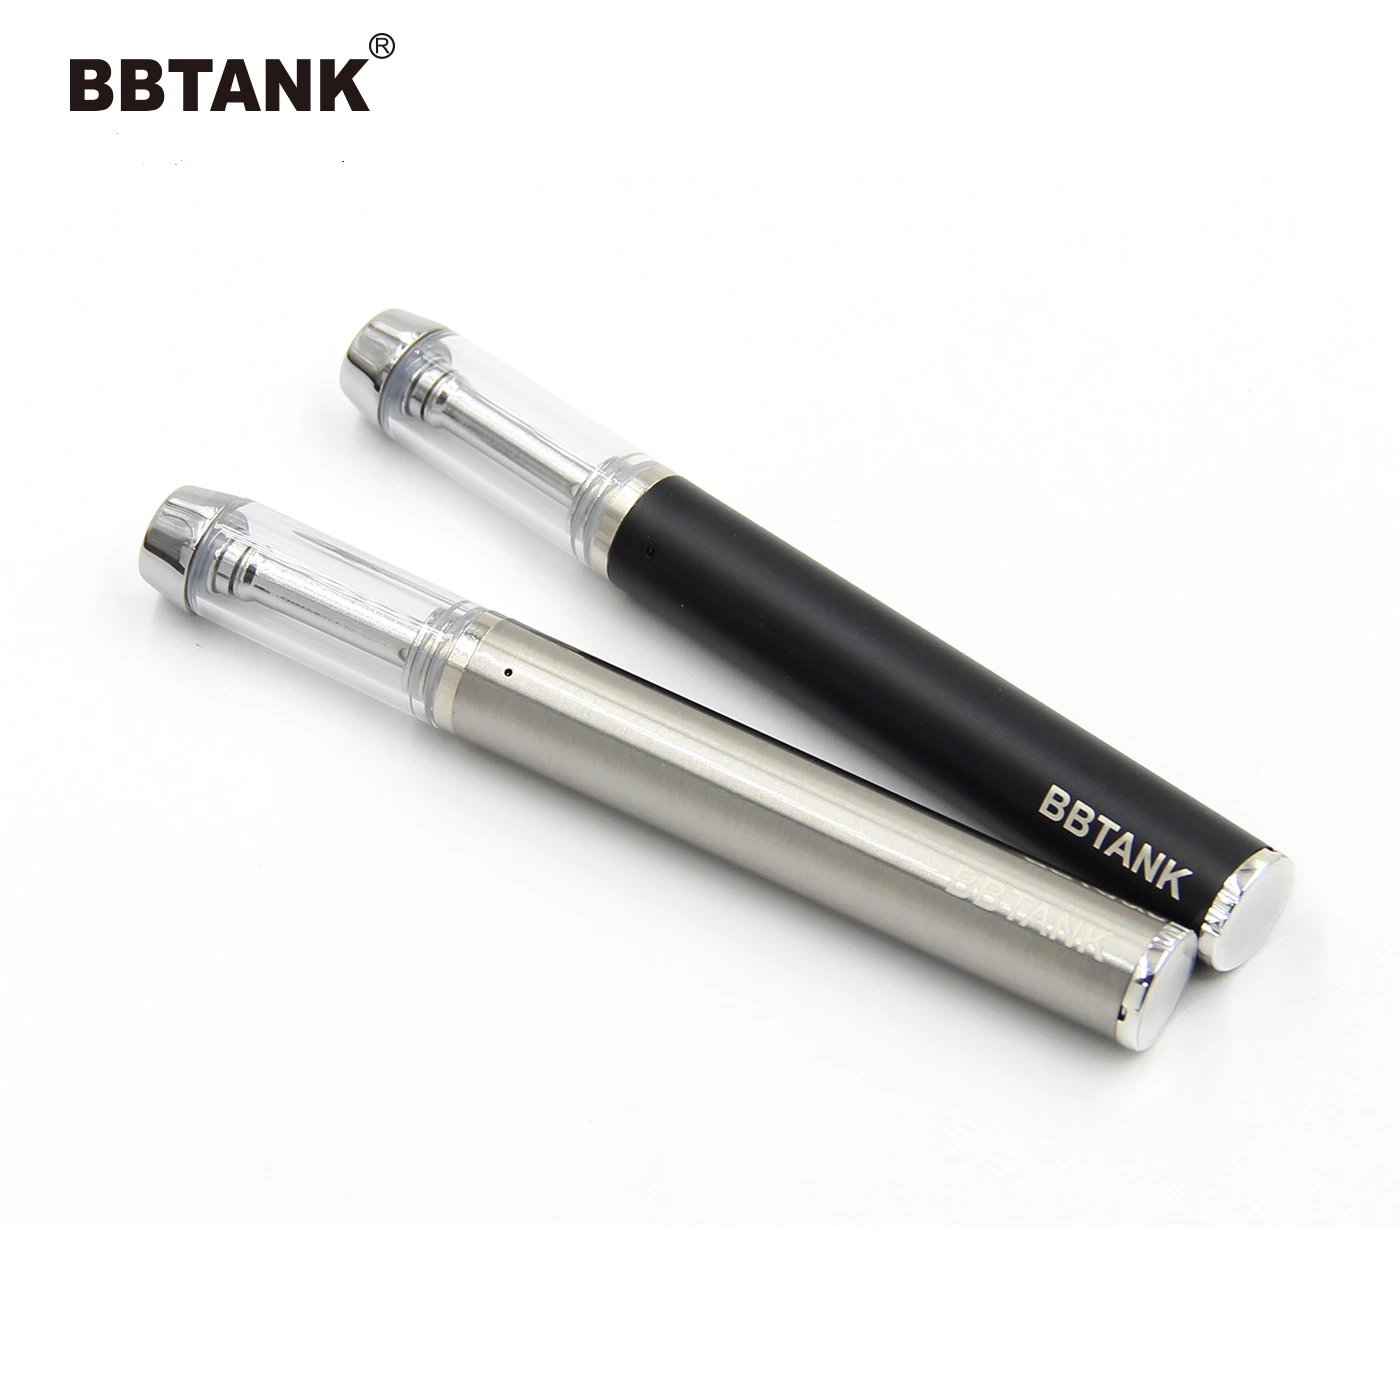 Poderoso 530 mAh recarregáveis Vape descartáveis Bbtank Vape Eletrônico de canetas de feltro